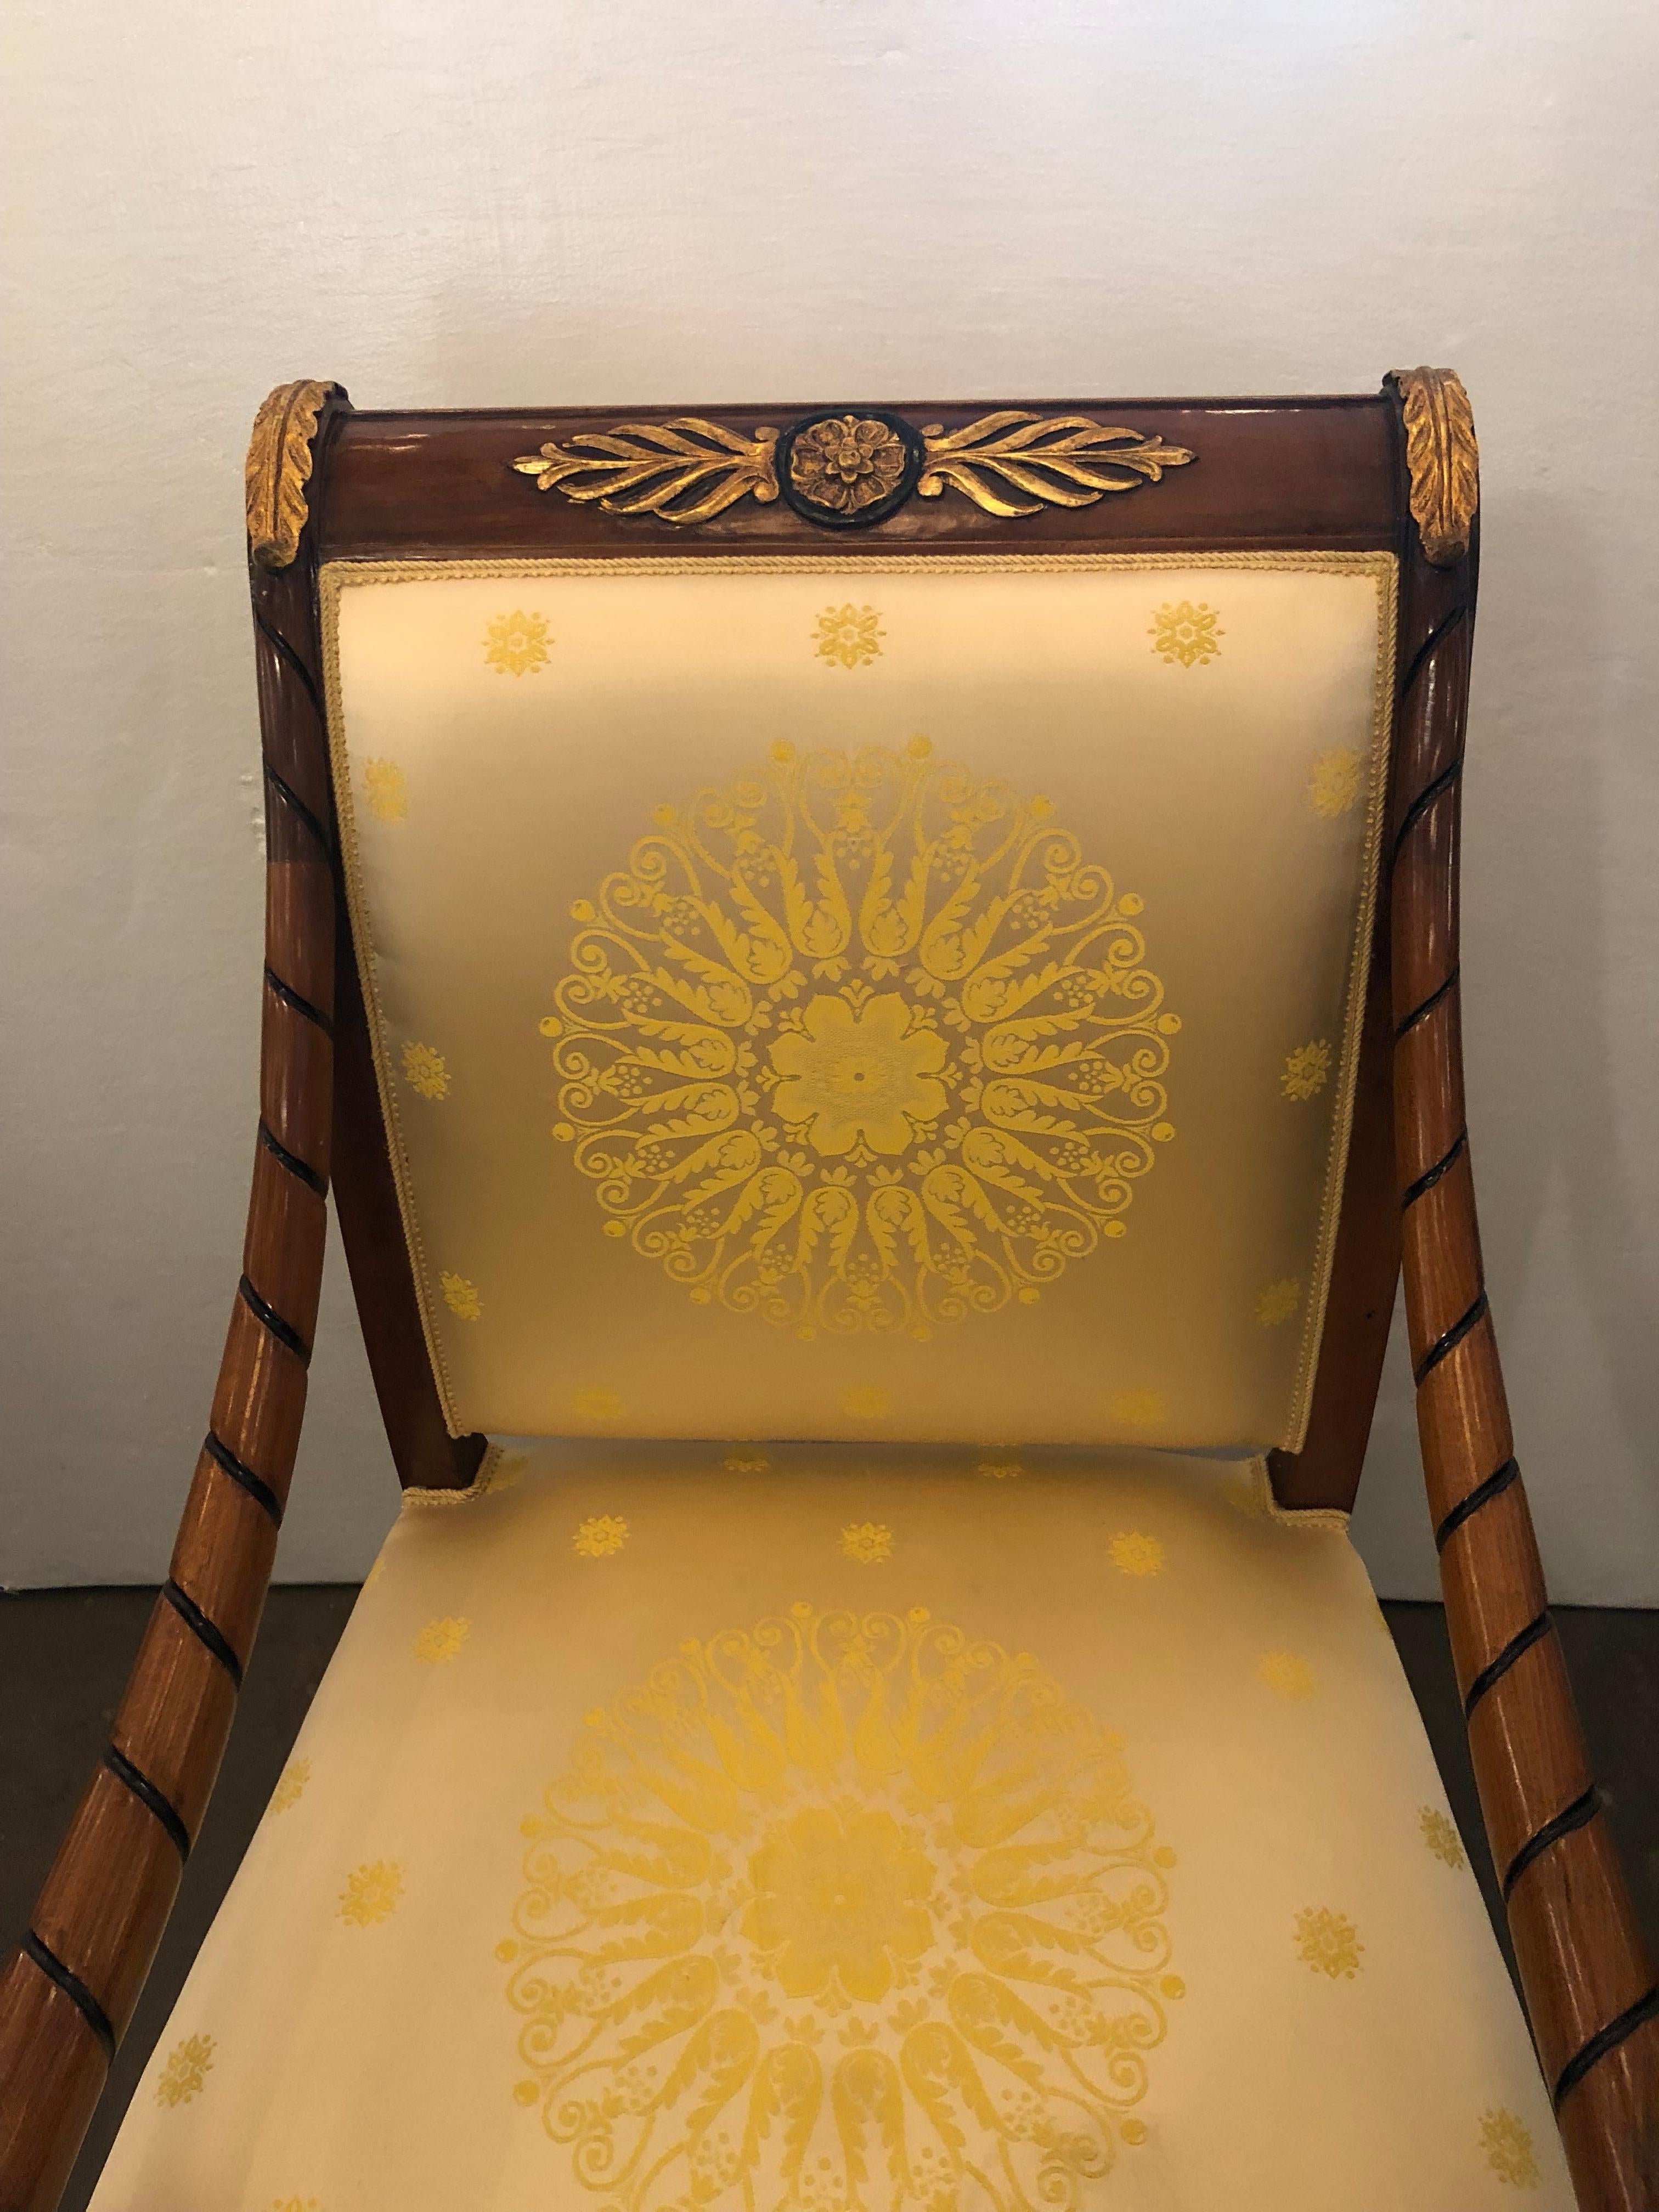 Einzigartiges Stück Empire-Stil Paket vergoldet und Ebonized Sessel.

